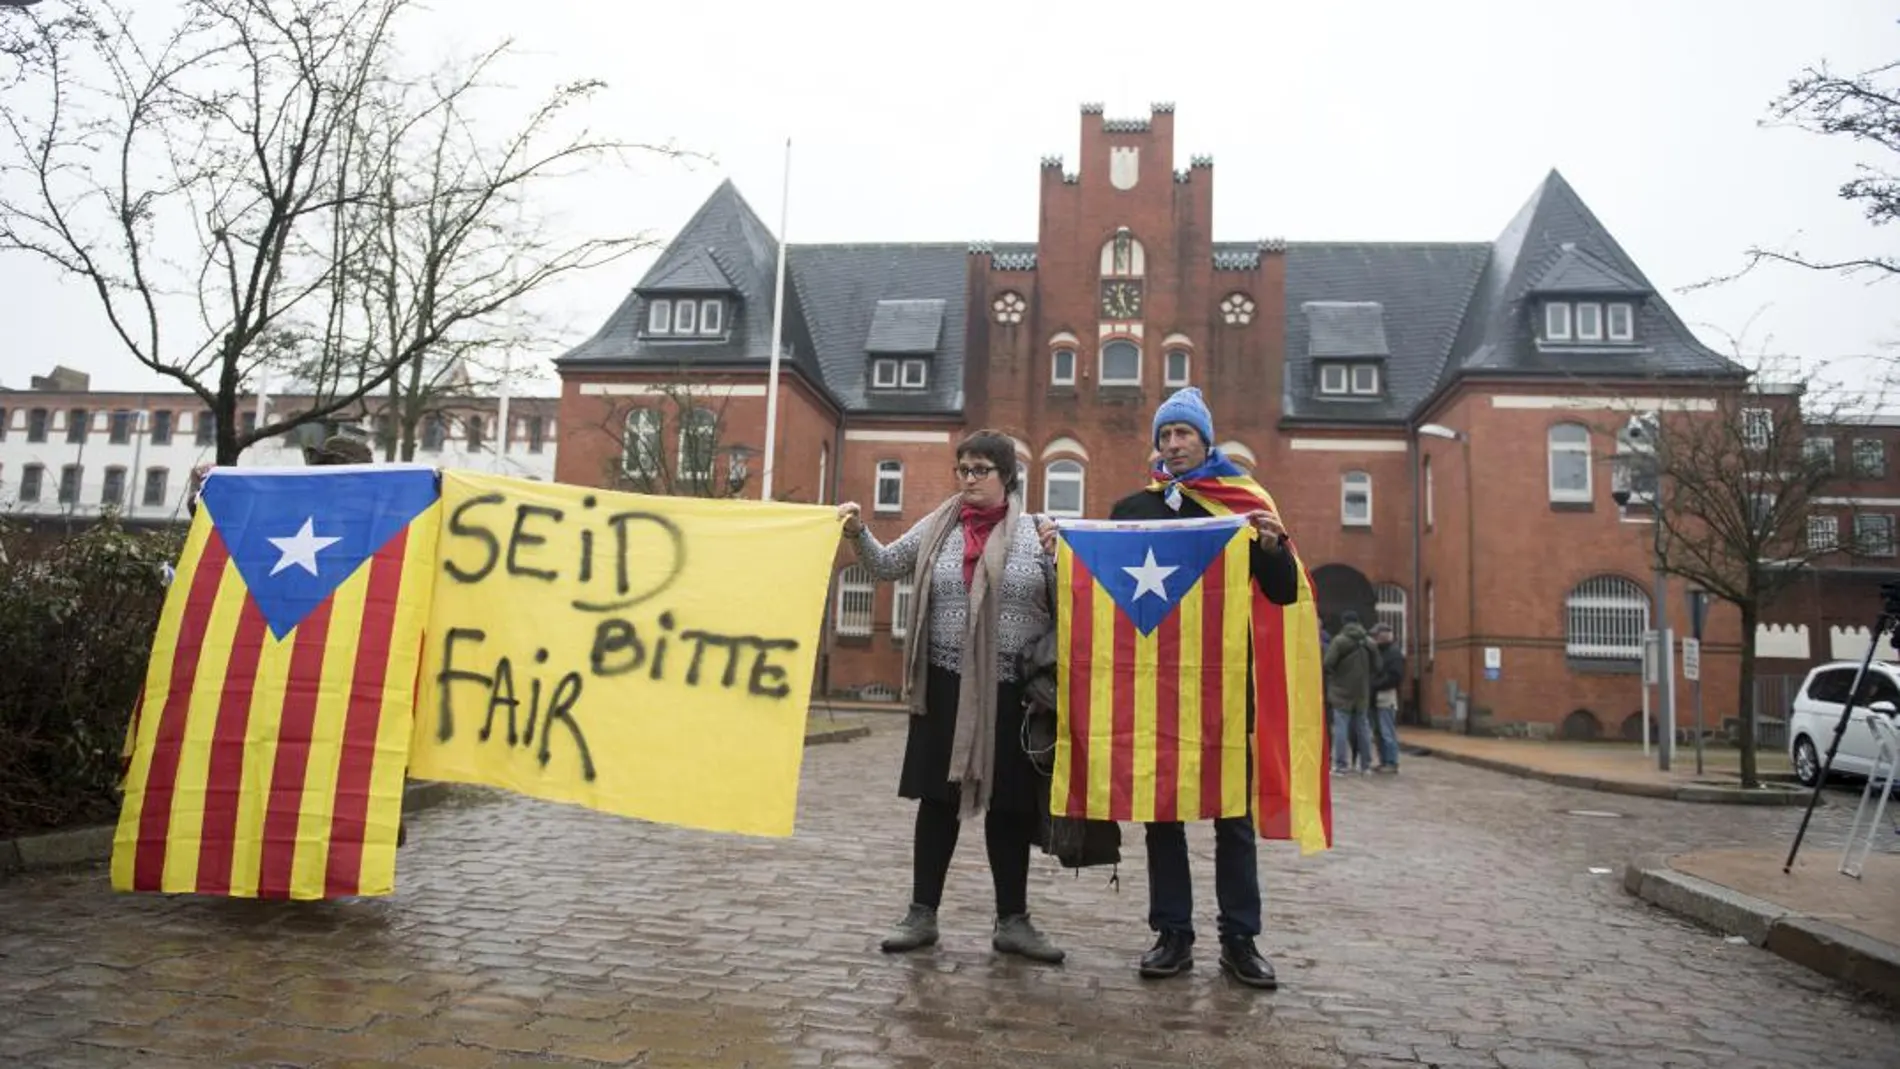 Independentistas ante la cárcel en que se encuentra Carles Puigdemont. (Daniel Reinhardt/dpa via AP)